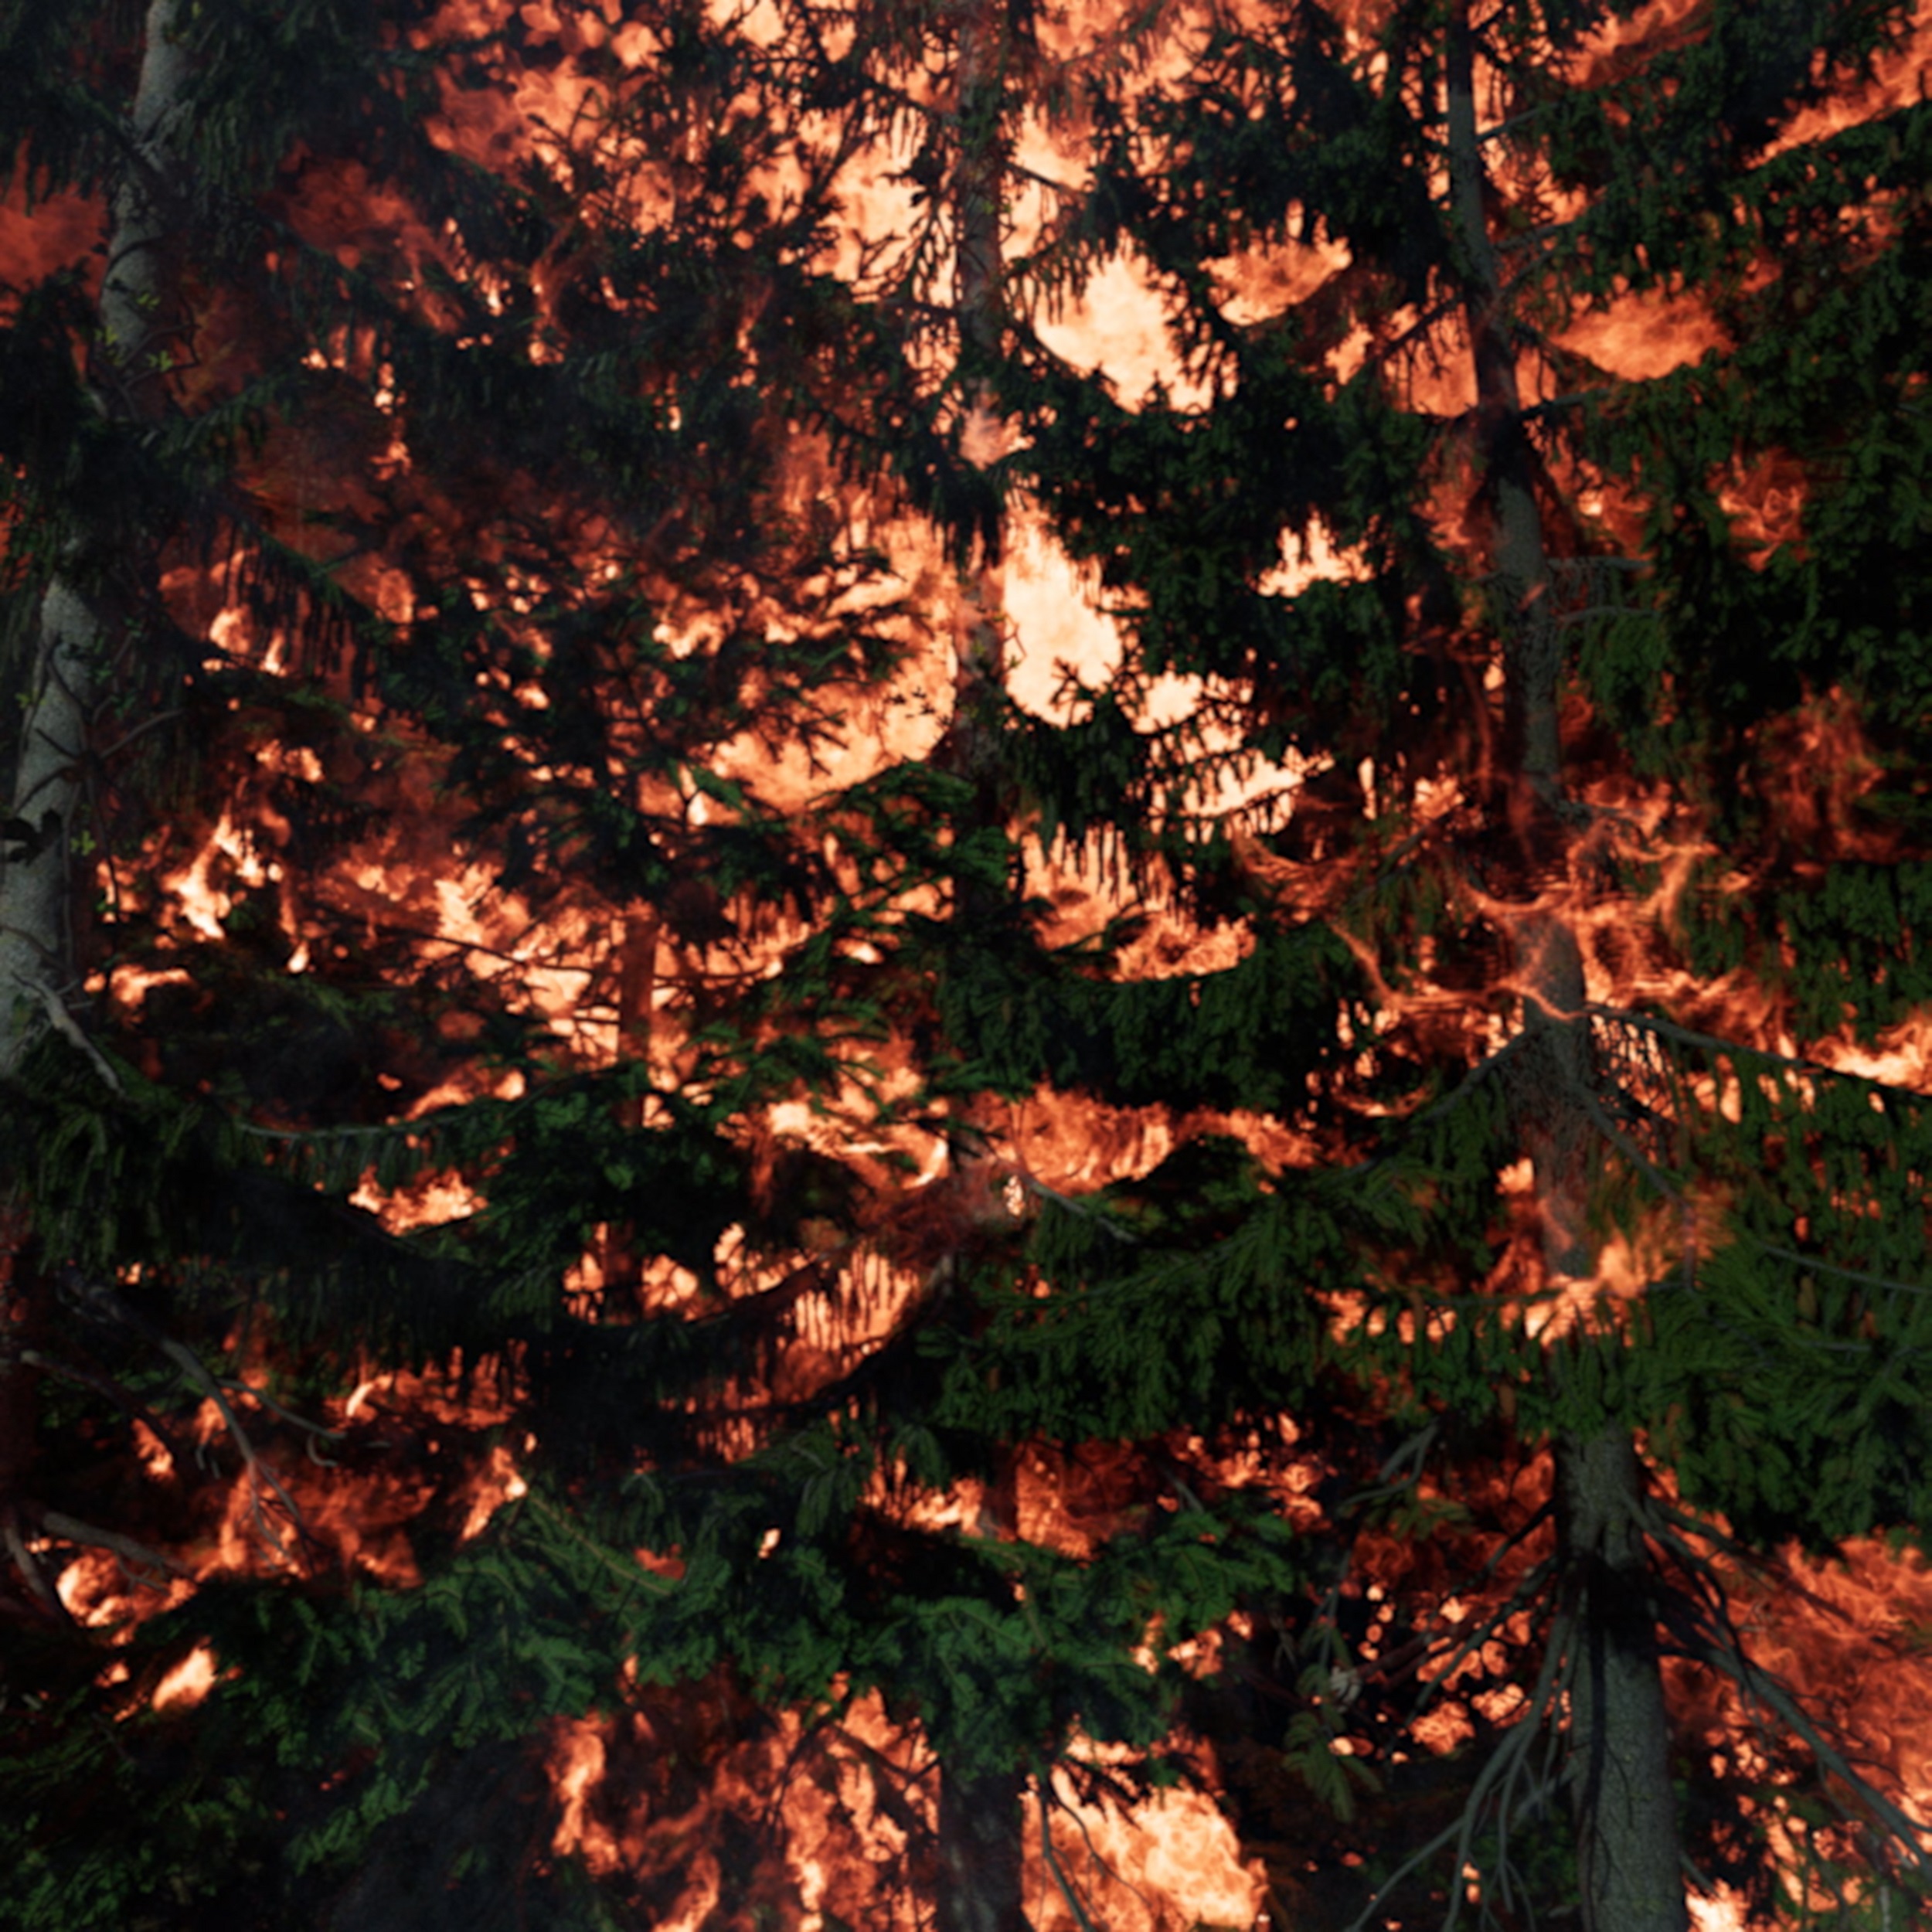 David Claerbout: Futótűz (merengés a tűzön) | Wildfire (meditation on fire), 2019–2020 © David Claerbout